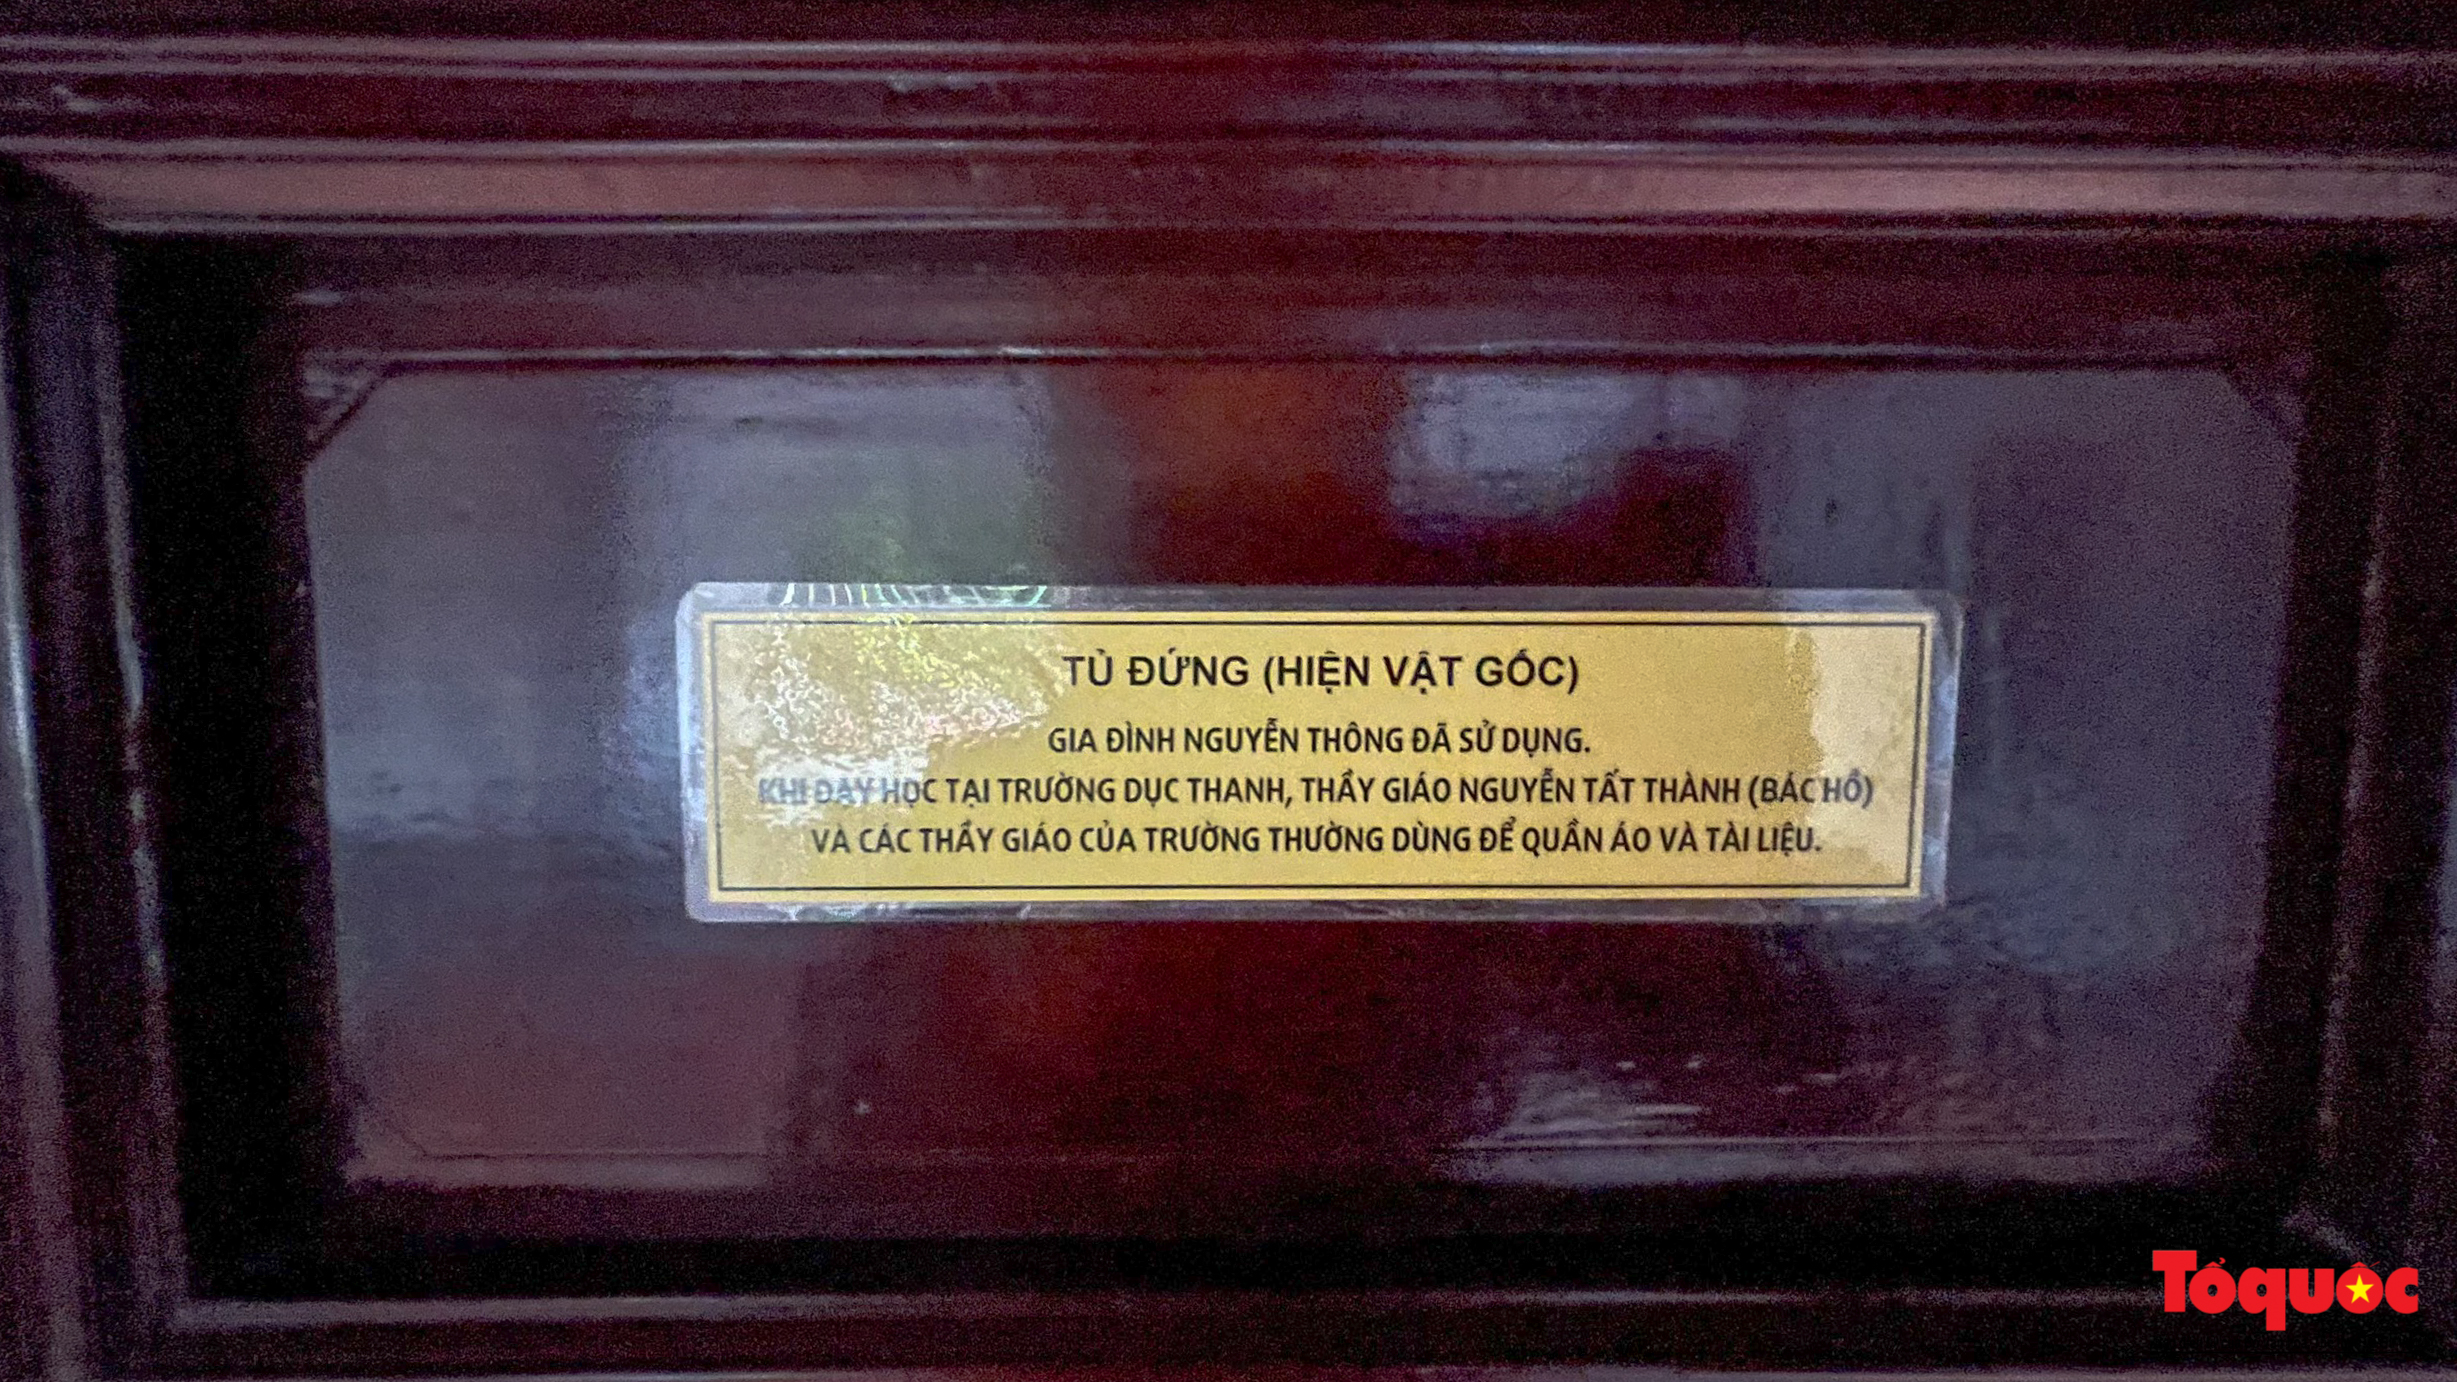 Đến Khu di tích trường Dục Thanh tìm hiểu về cuộc đời cao đẹp của nhà giáo Nguyễn Tất Thành - Ảnh 7.